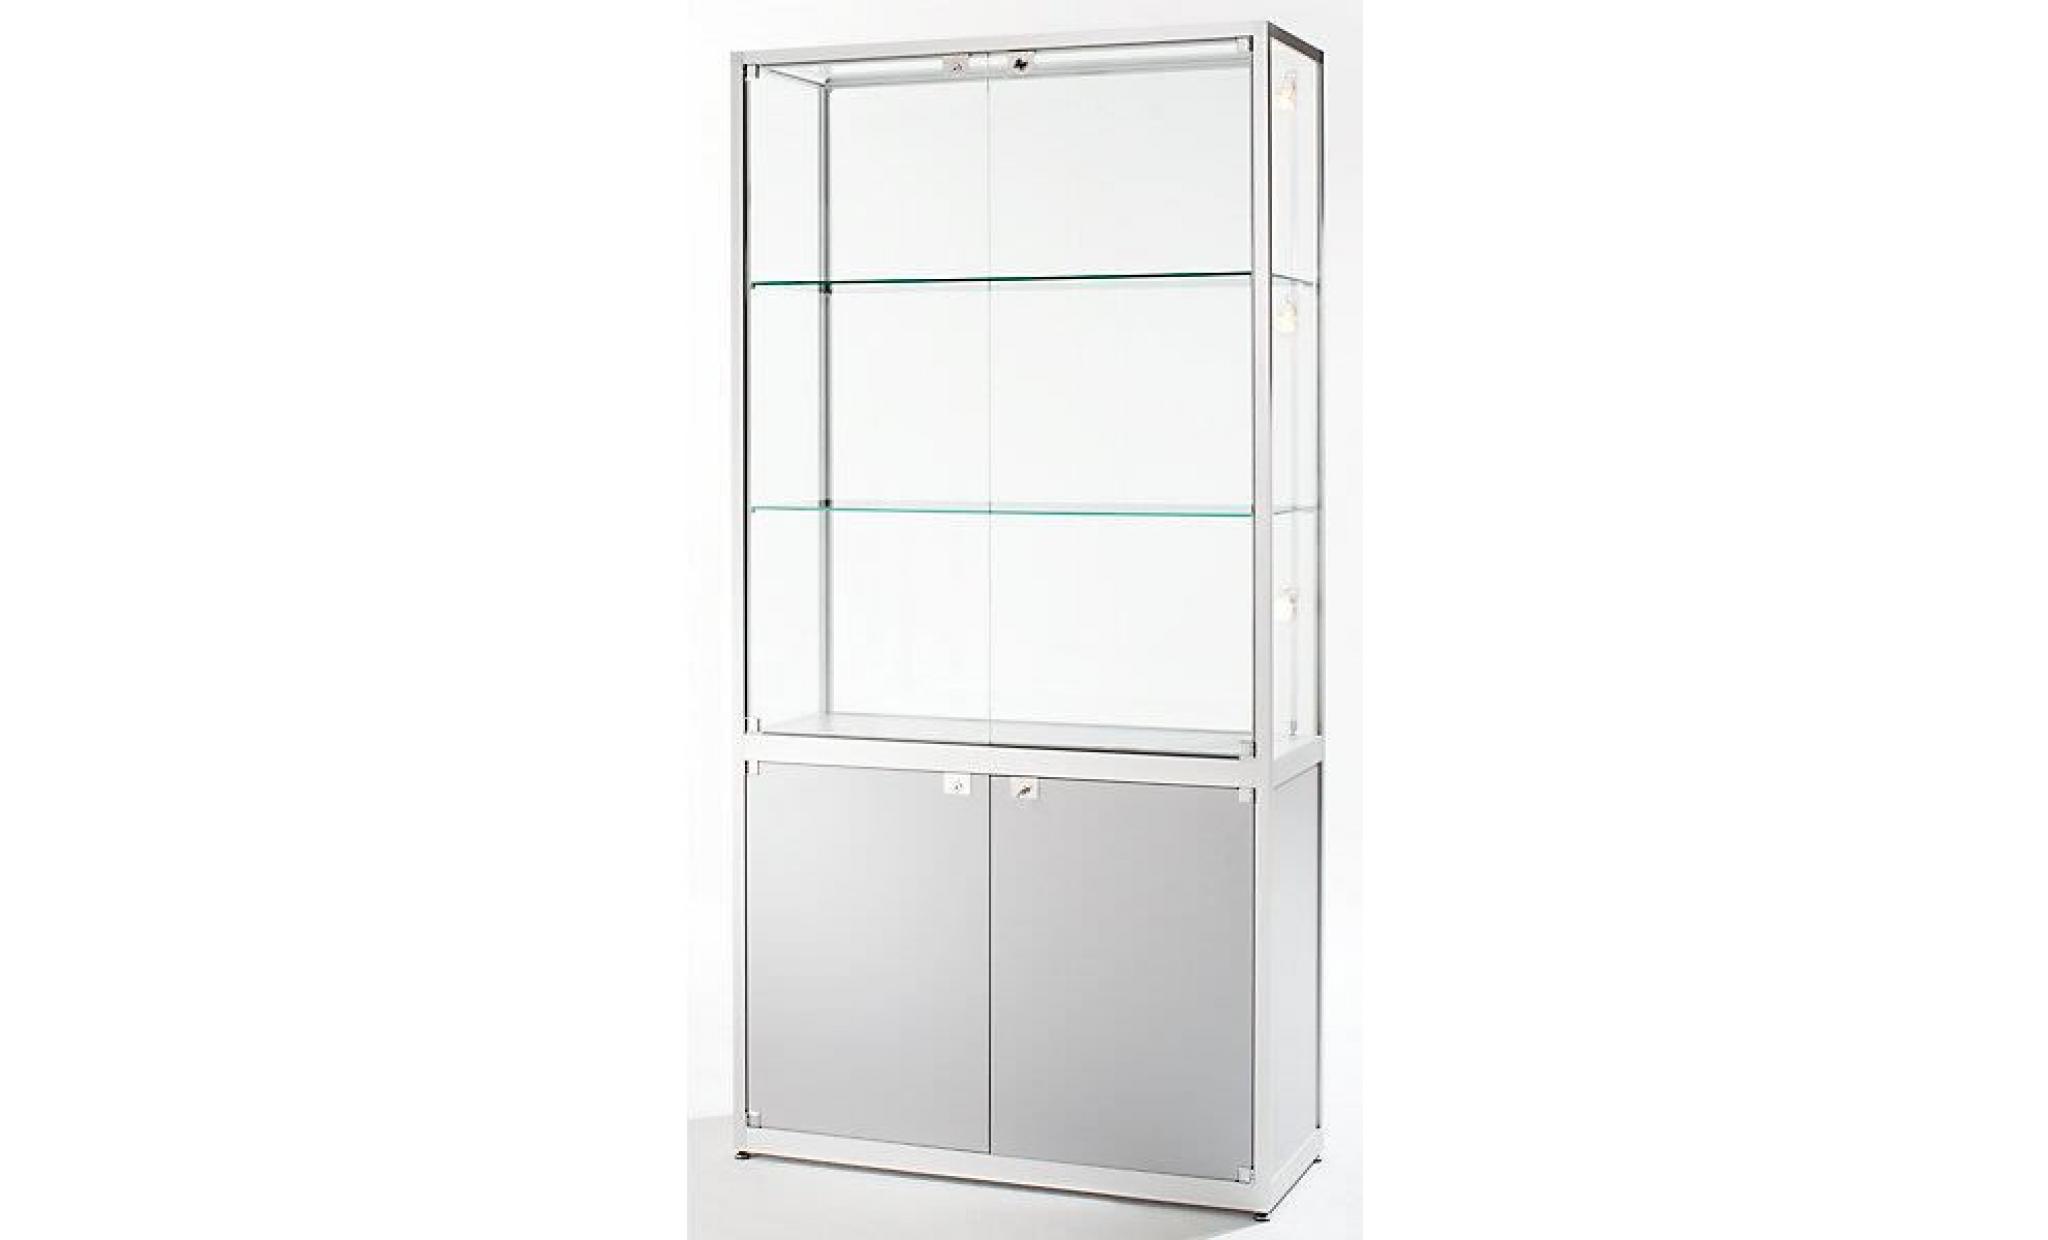 vitrine à compartiments   2 portes pivotantes, h x l x p 2000 x 500 x 400 mm   anodisé argent   armoire à vitrine armoires à vitrine